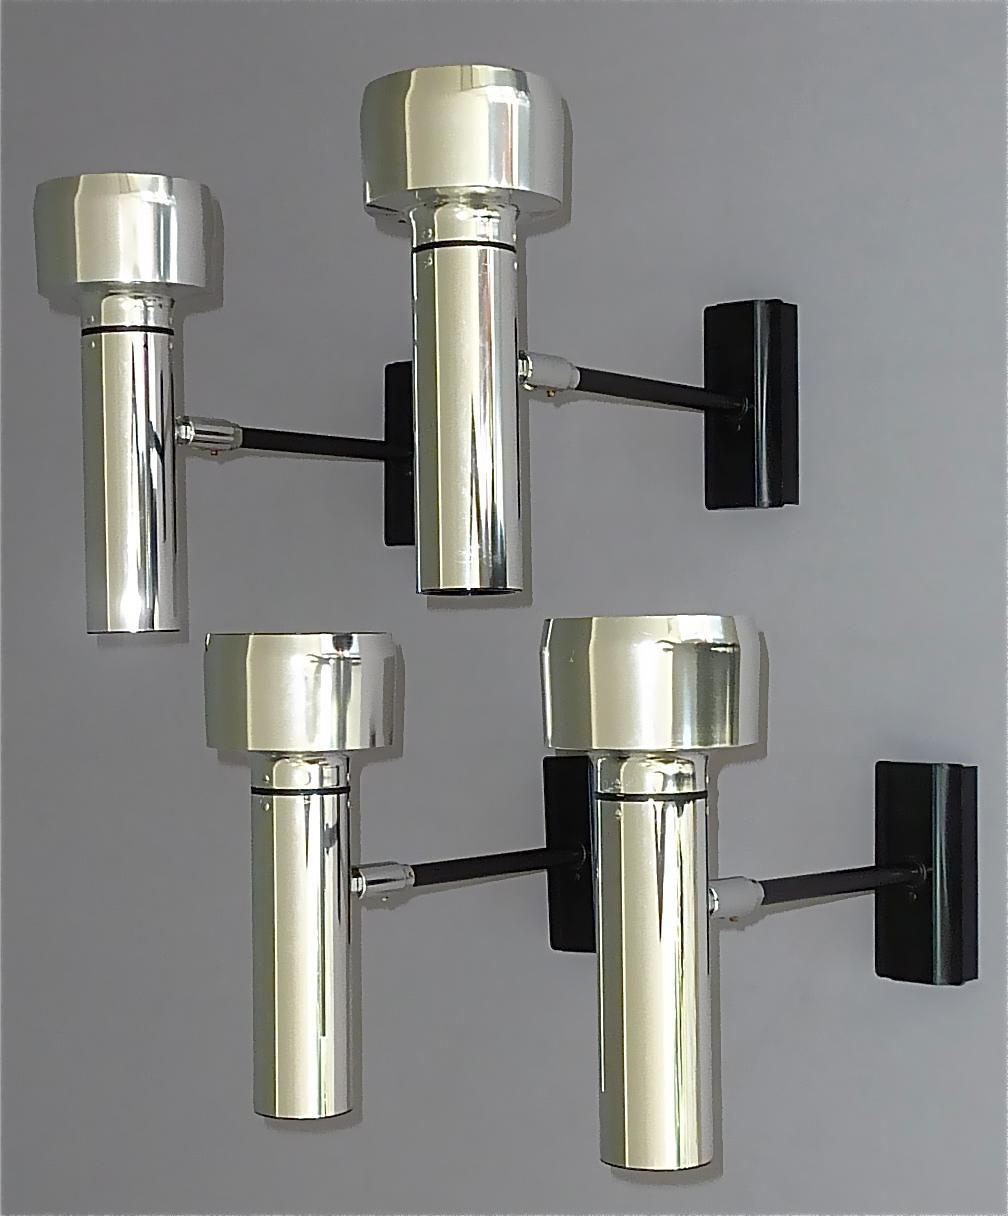 Ensemble de quatre appliques, appliques, plafonniers, spots et lampes de style Gino Sarfatti pour Arteluce, fabriqués par Erco, Allemagne, vers 1970. Cet ensemble multifonctionnel de haute qualité est fabriqué en aluminium poli, en métal chromé